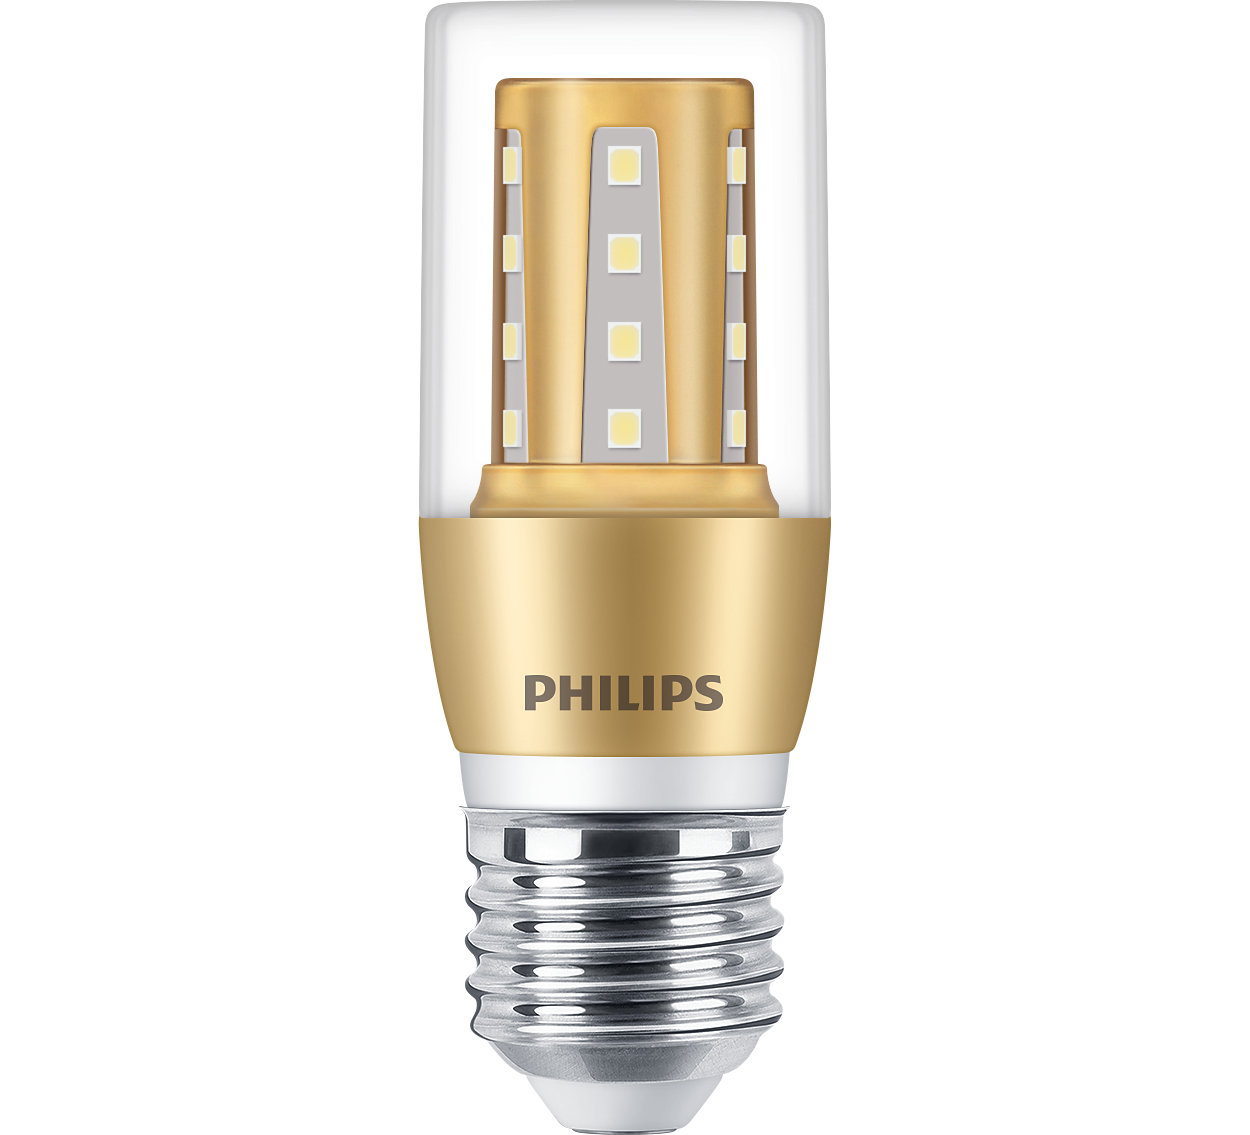 透明 LED 烛泡为您的家居增添闪亮光彩